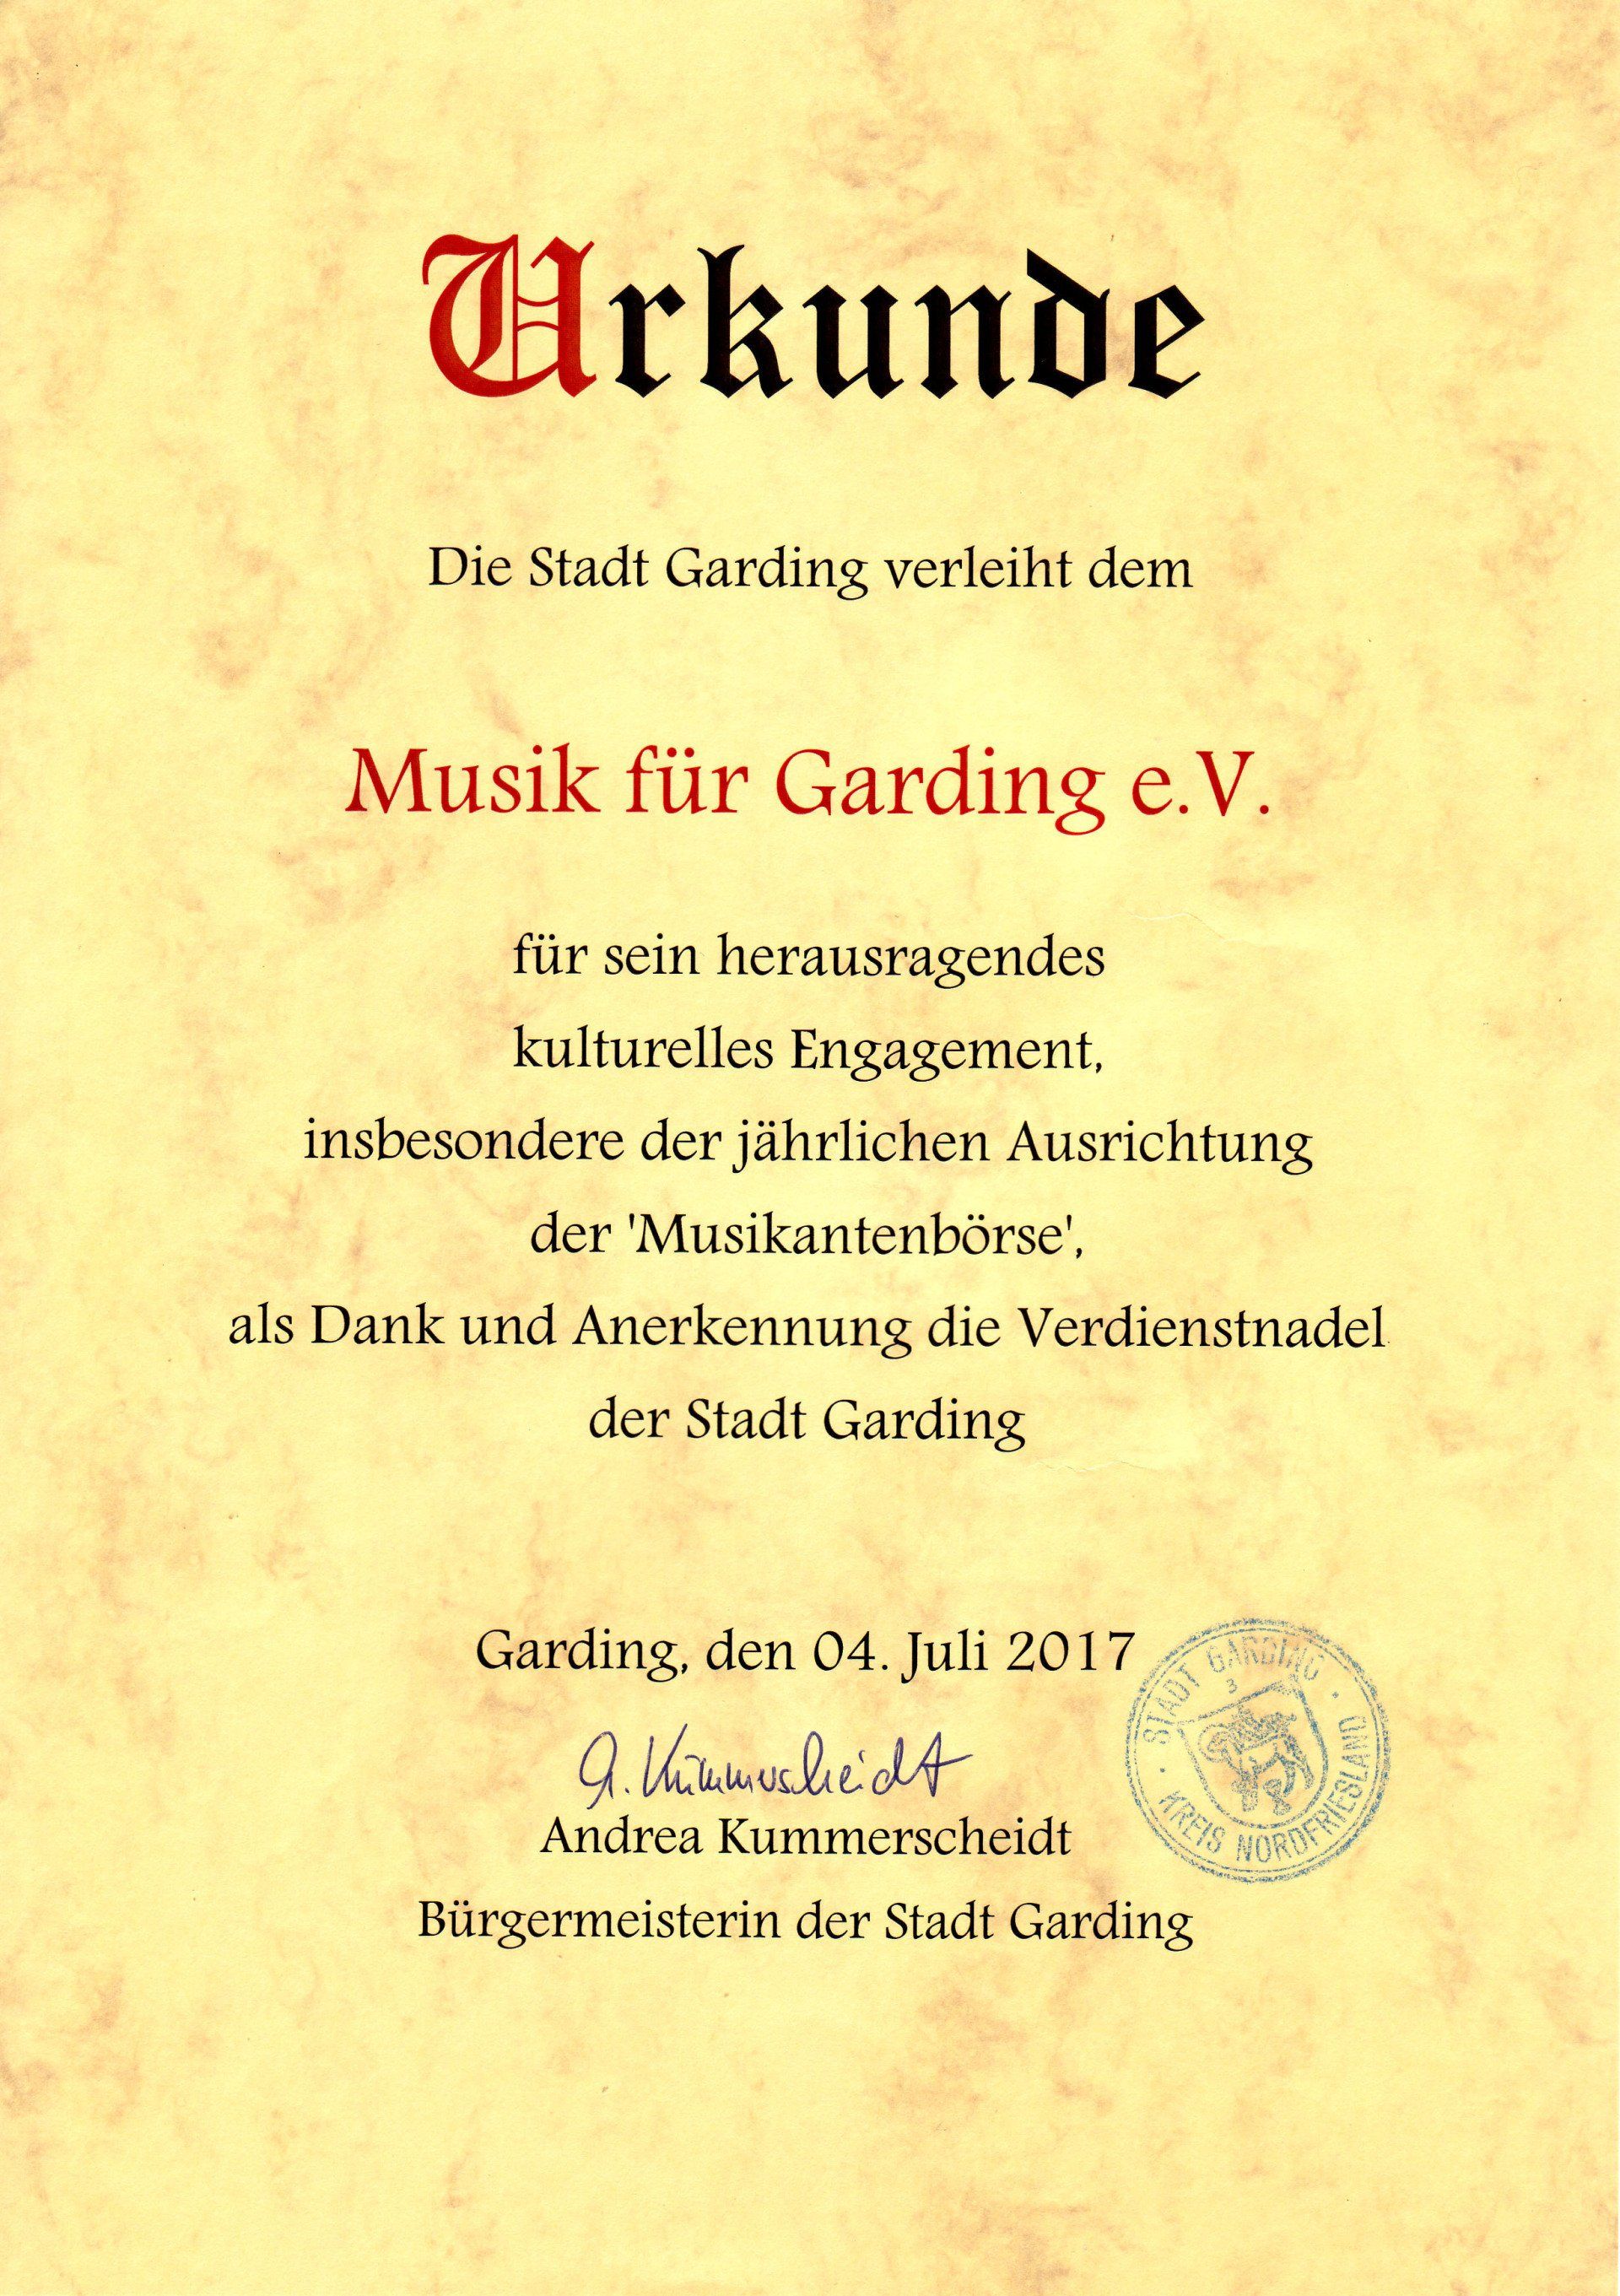 Urkunde, Musik für Garding, Eiderstedt, St. Peter-Ording